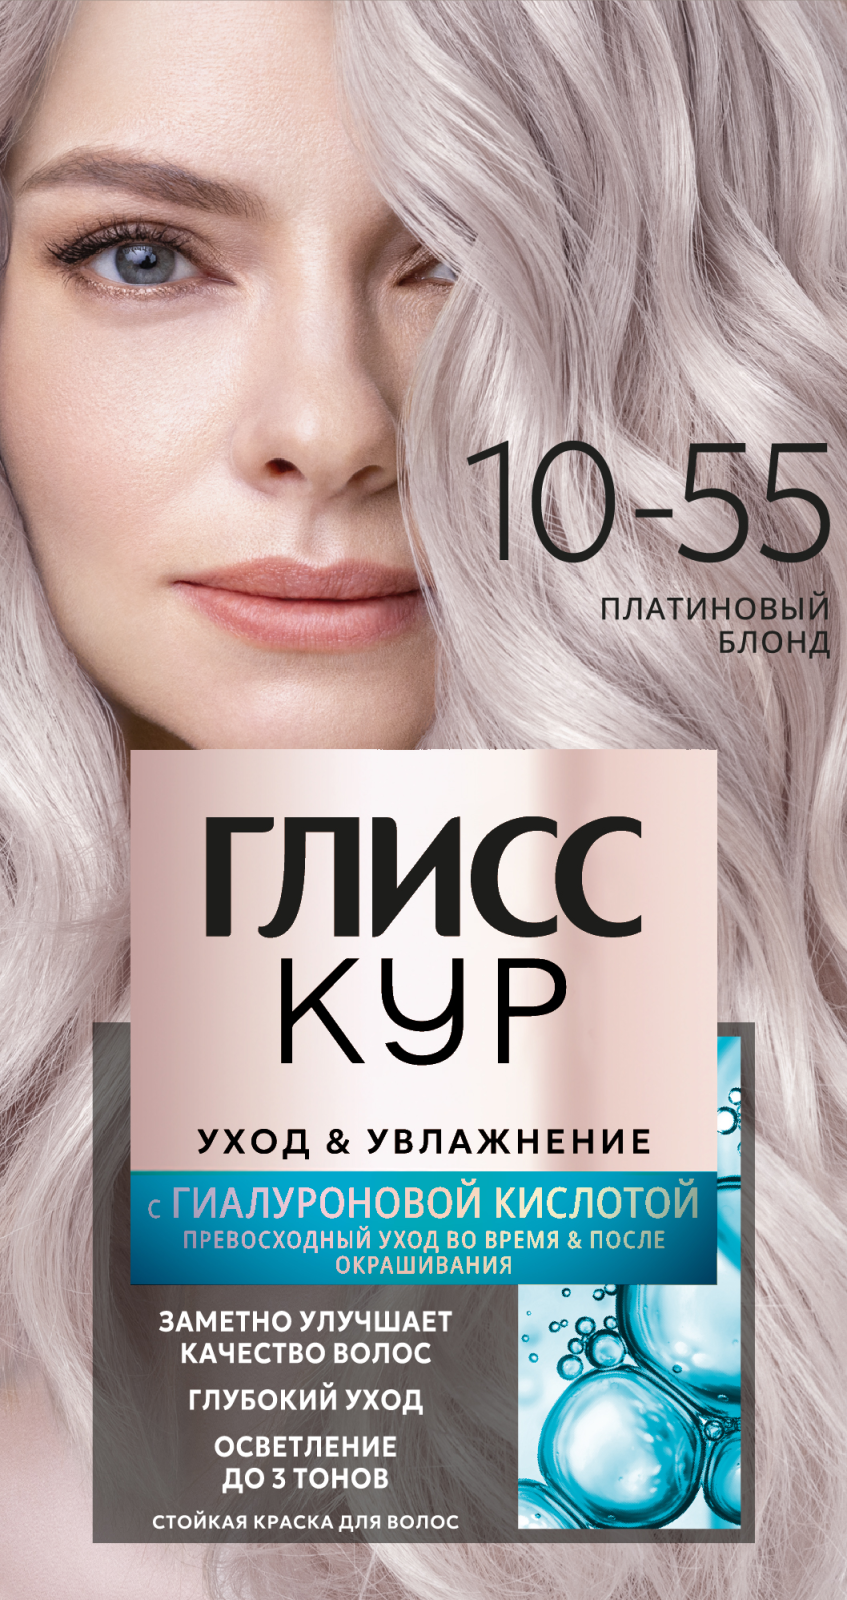 Краска для волос Глисс Кур 10-55 Платиновый блонд 165г